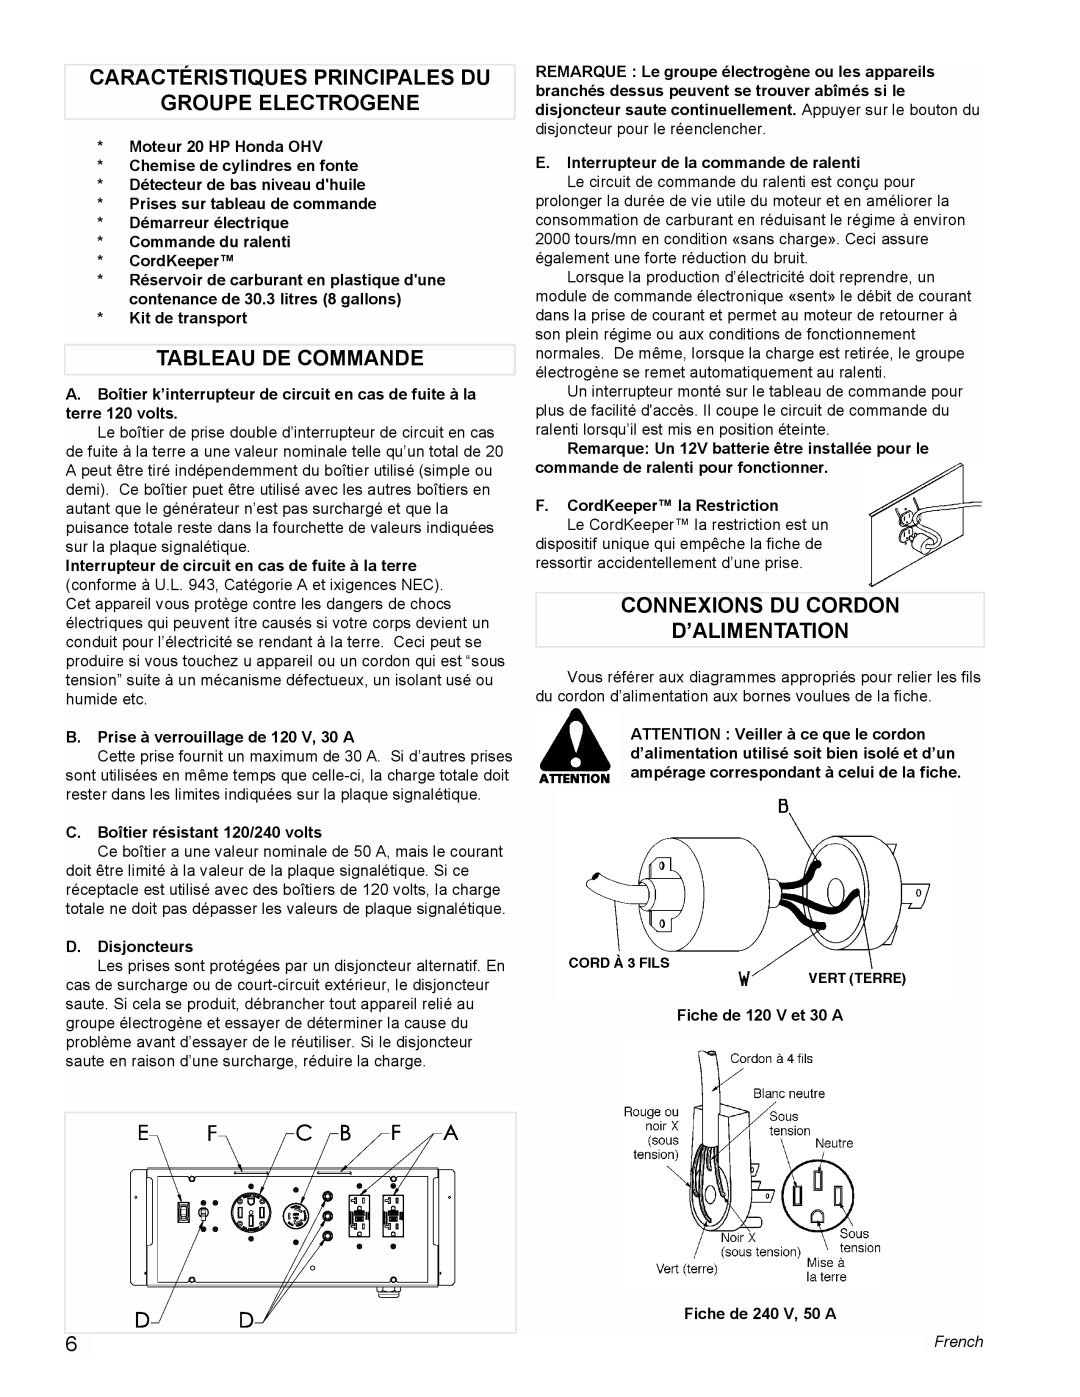 Coleman PM0601100 manual Caractéristiques Principales Du Groupe Electrogene, Tableau De Commande, French 